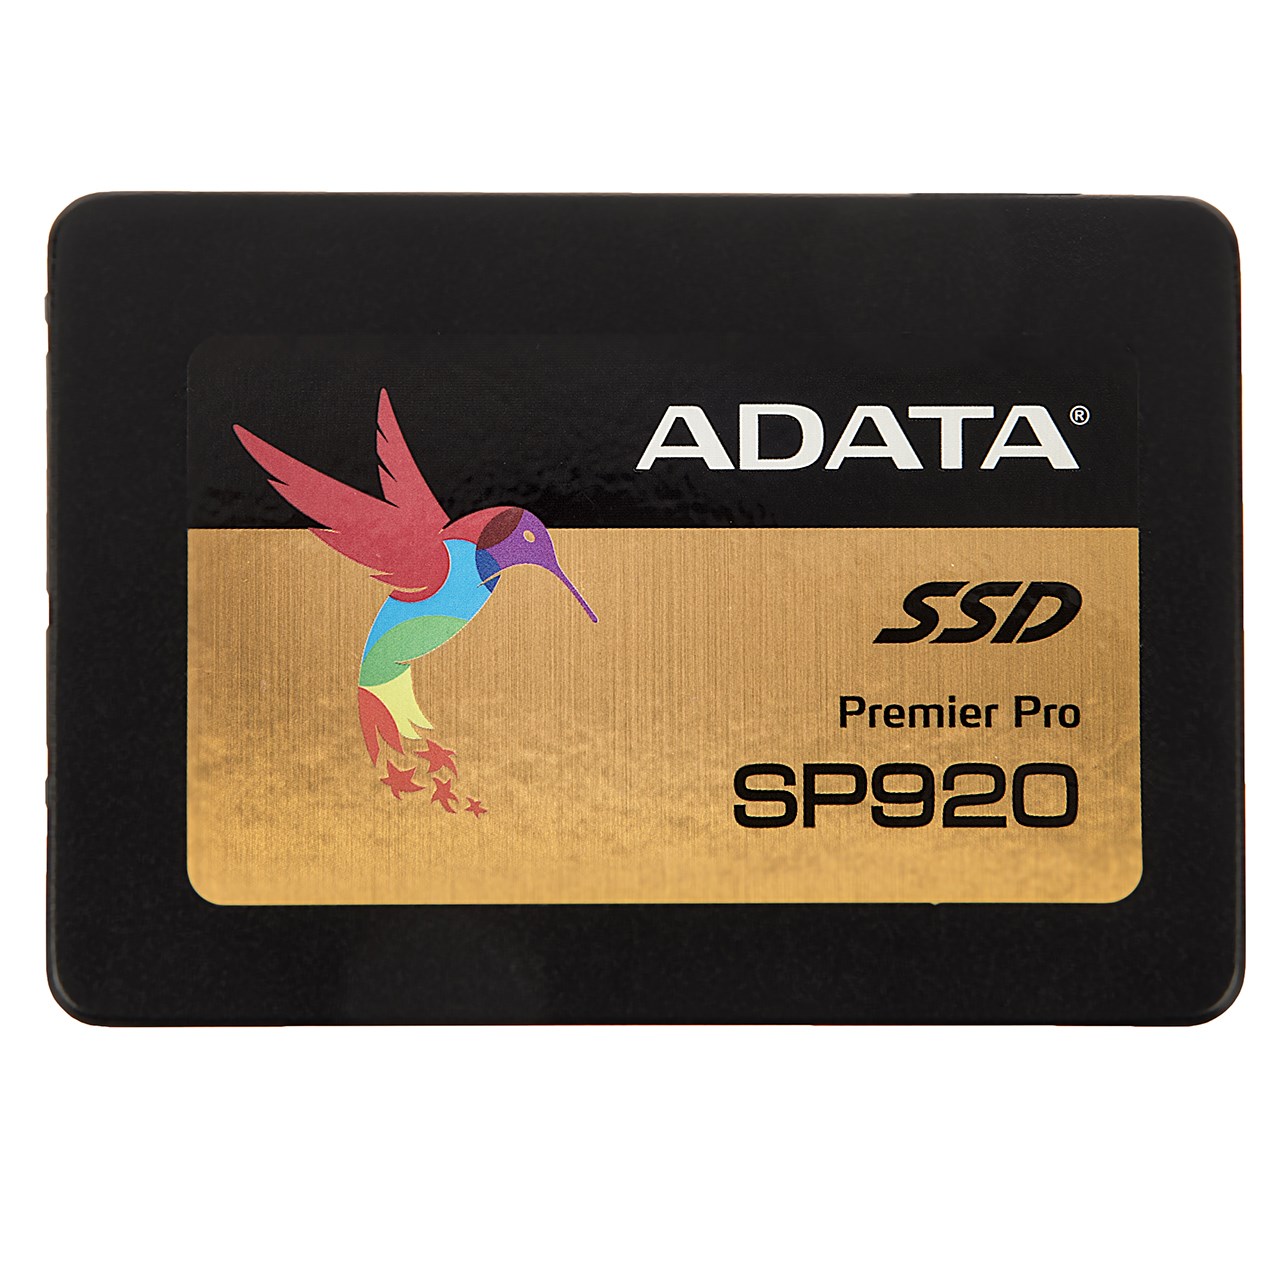 حافظه SSD ای دیتا SP920SS ظرفیت 128 گیگابایت